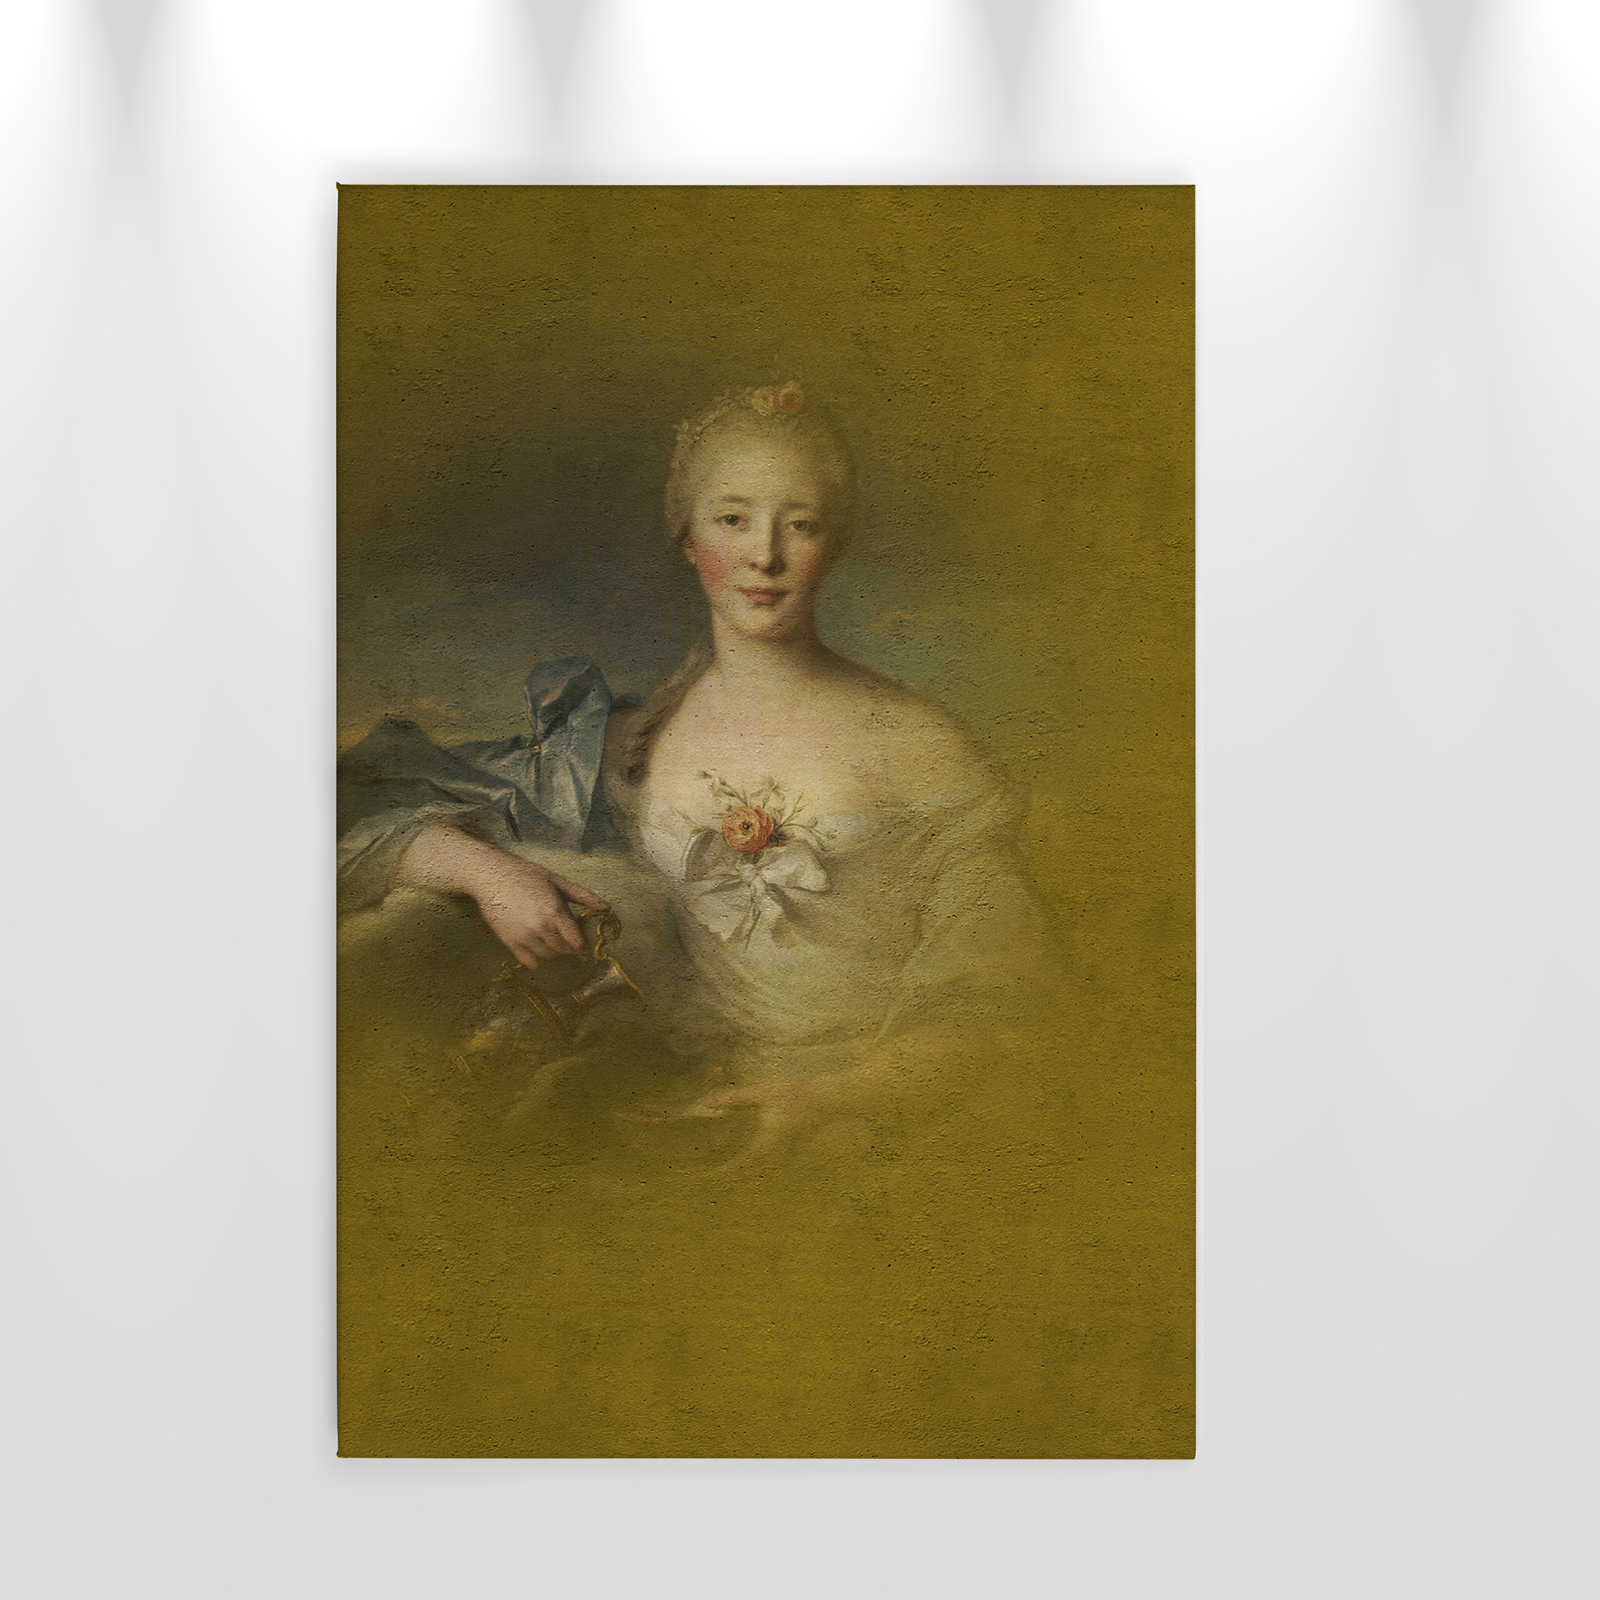             Toile classique Portrait jeune femme - 0,60 m x 0,90 m
        